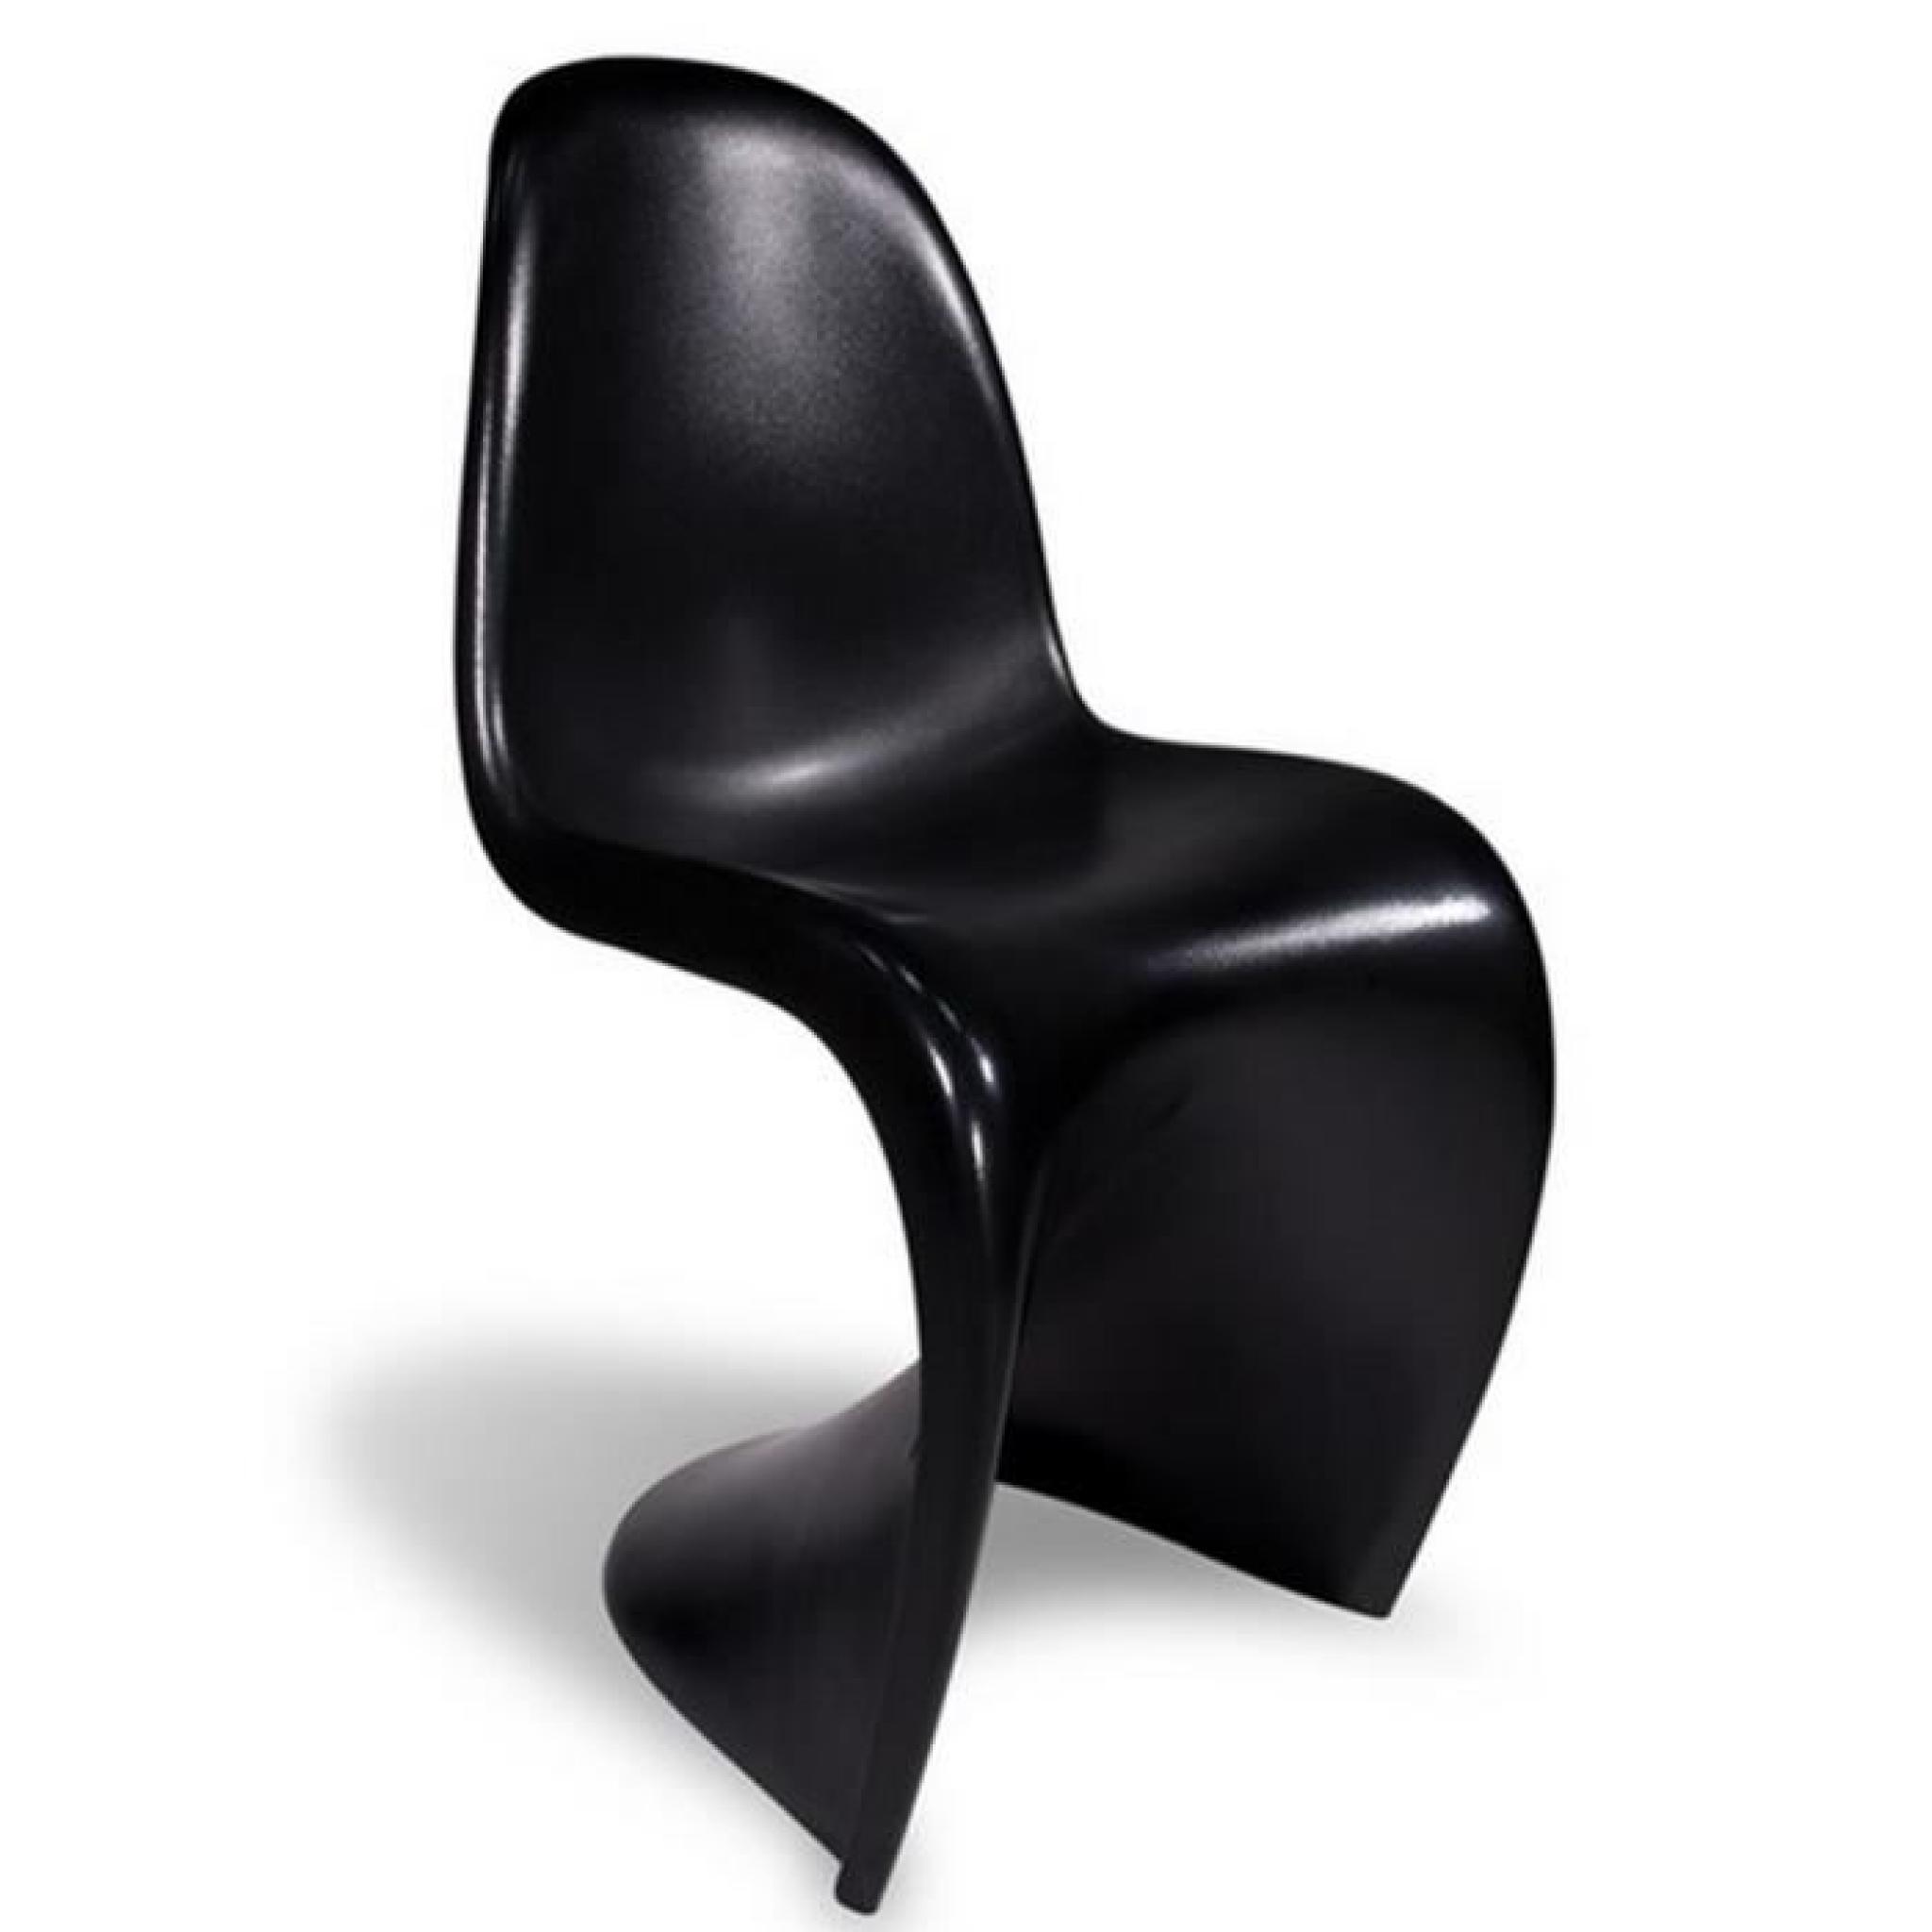 Chaise design noire - Pantonne